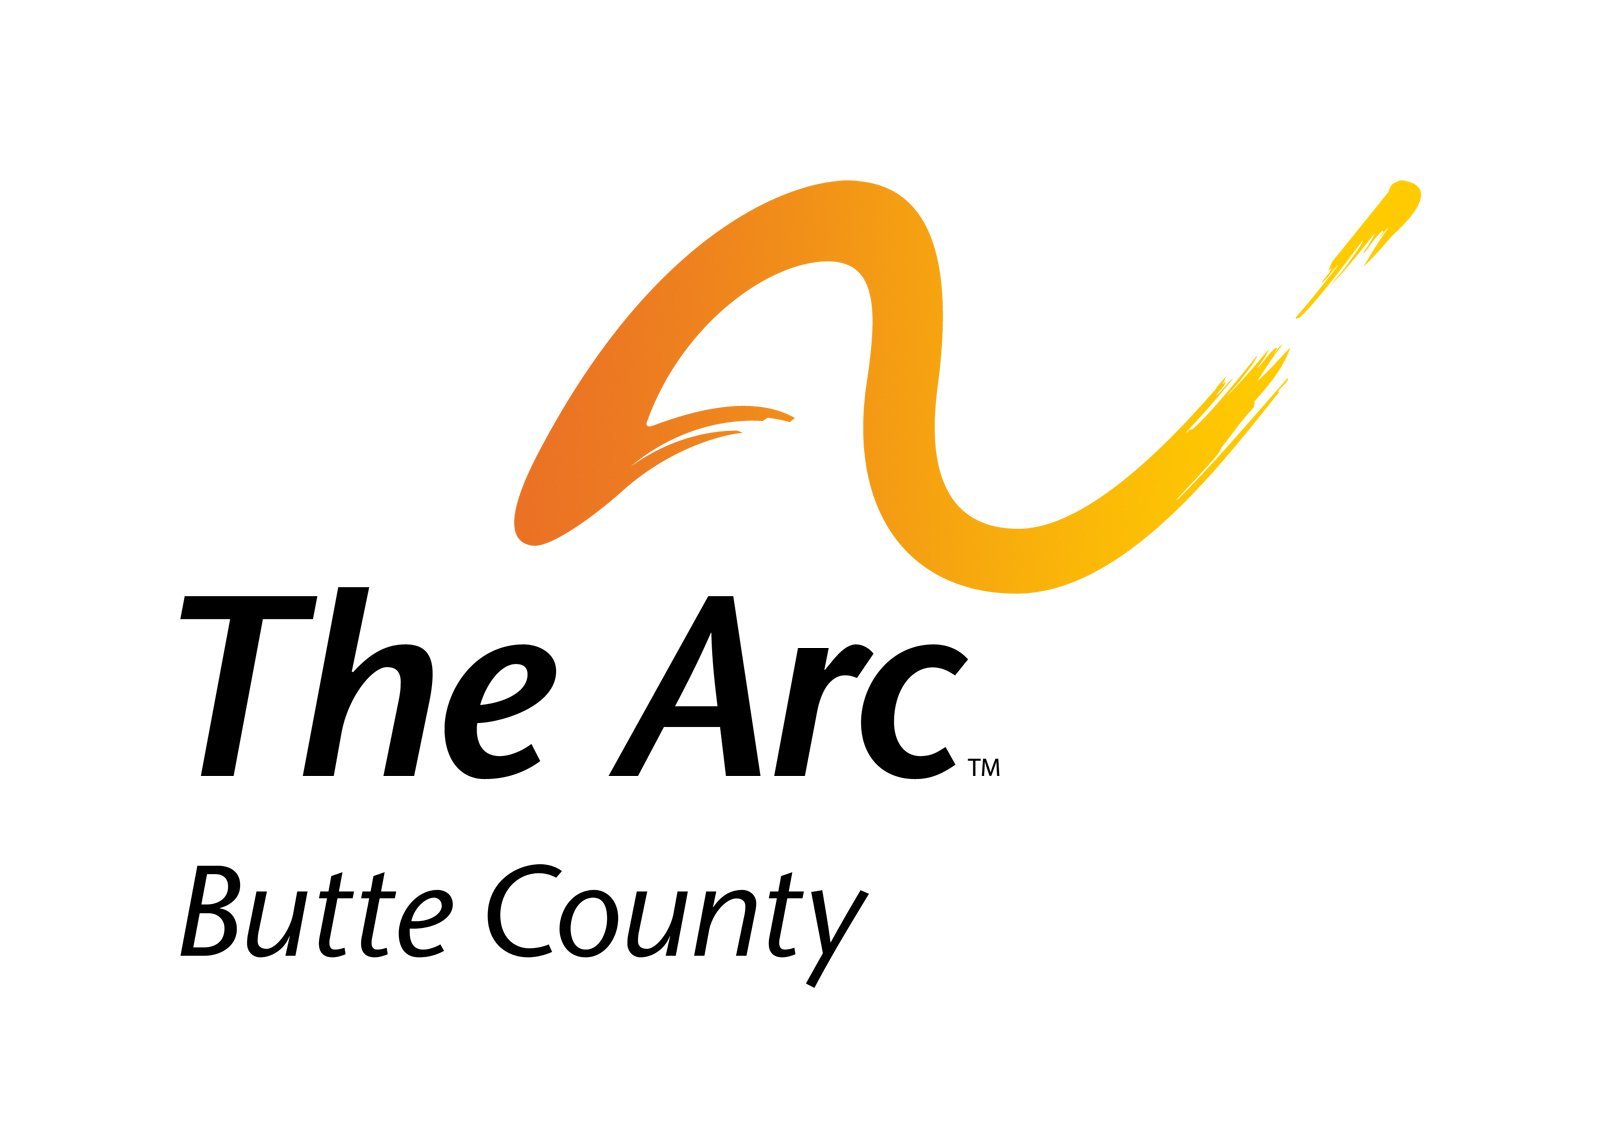 Butte_arc_logo.jpeg